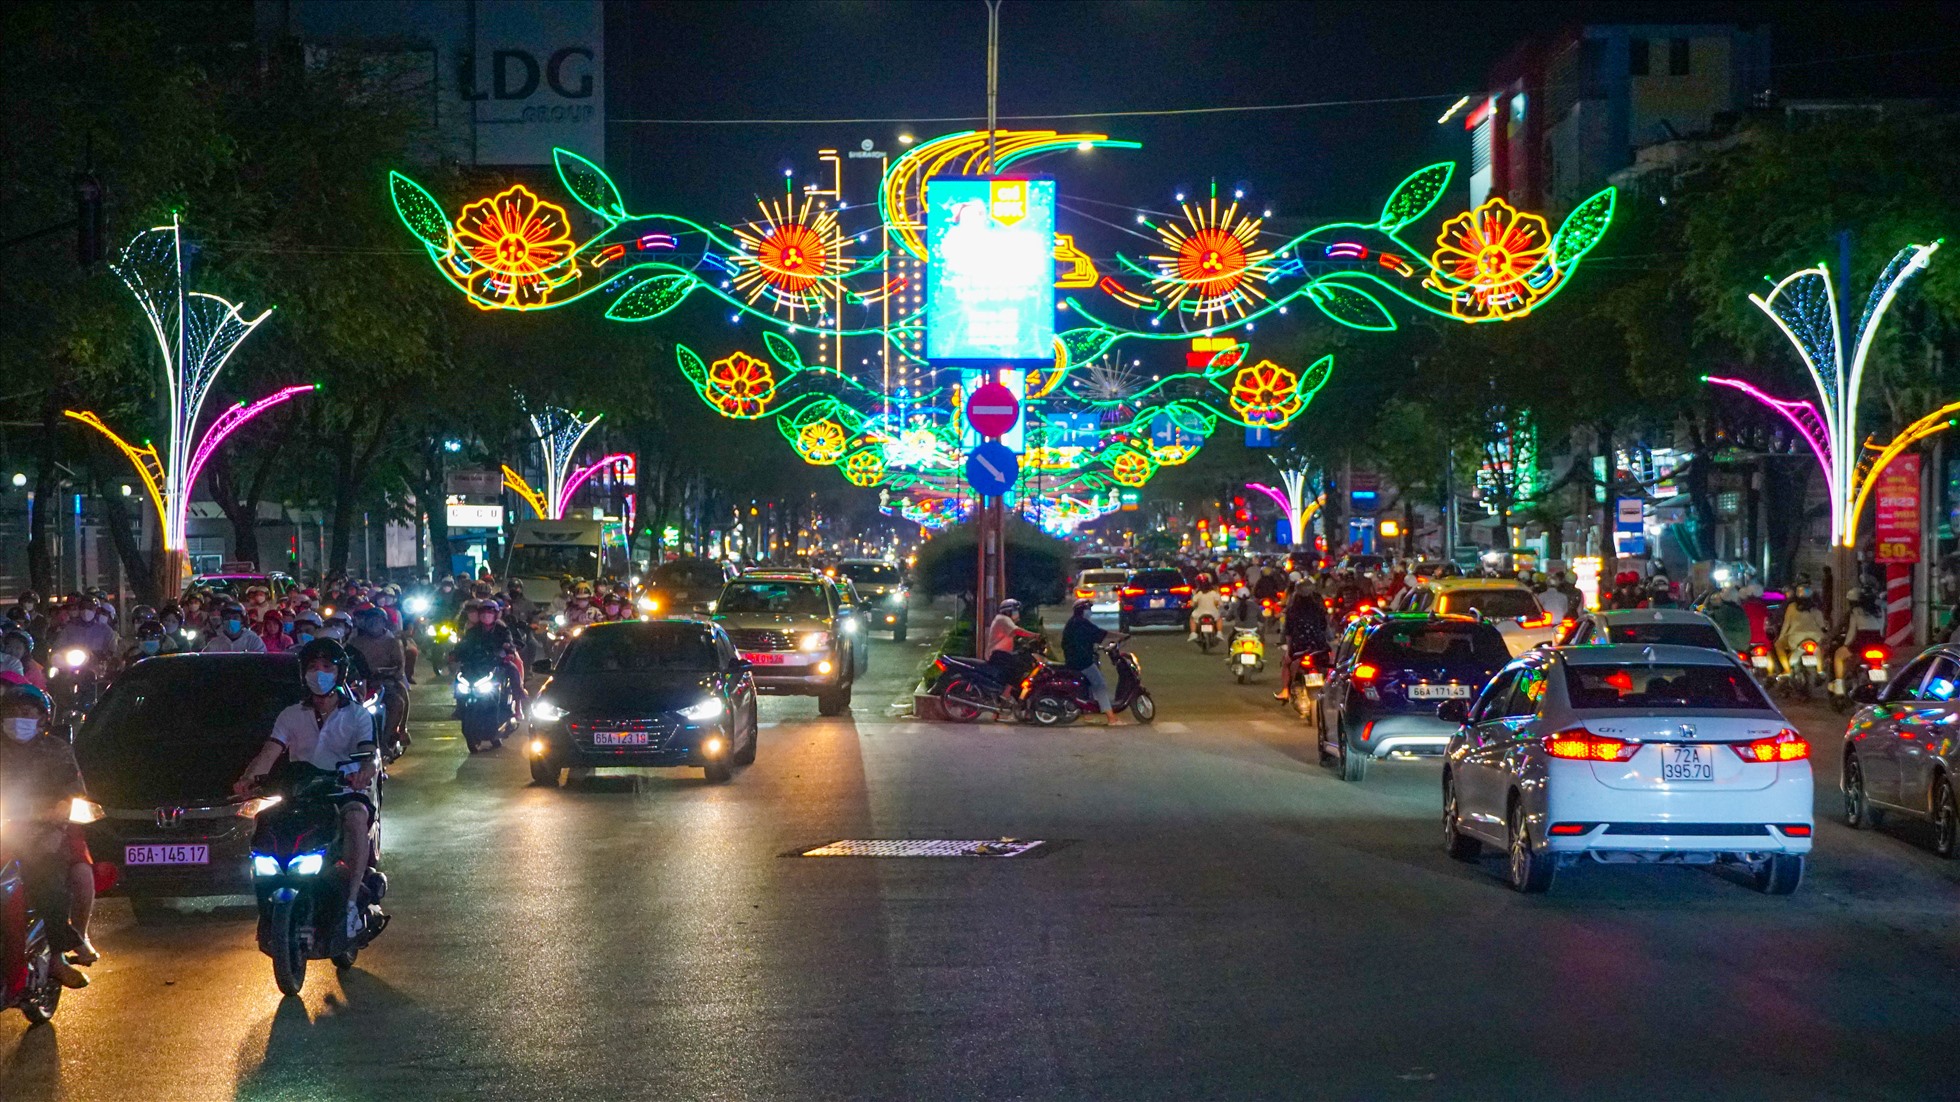 Ðoạn từ cổng chính đến siêu thị Nguyễn Kim có chủ đề “Cao tốc”, được thực hiện từ ý tưởng nhân dịp các dự án cao tốc đang được thực hiện như Mỹ Thuận - Cần Thơ, Cần Thơ - Cà Mau, Cần Thơ - Sóc Trăng.